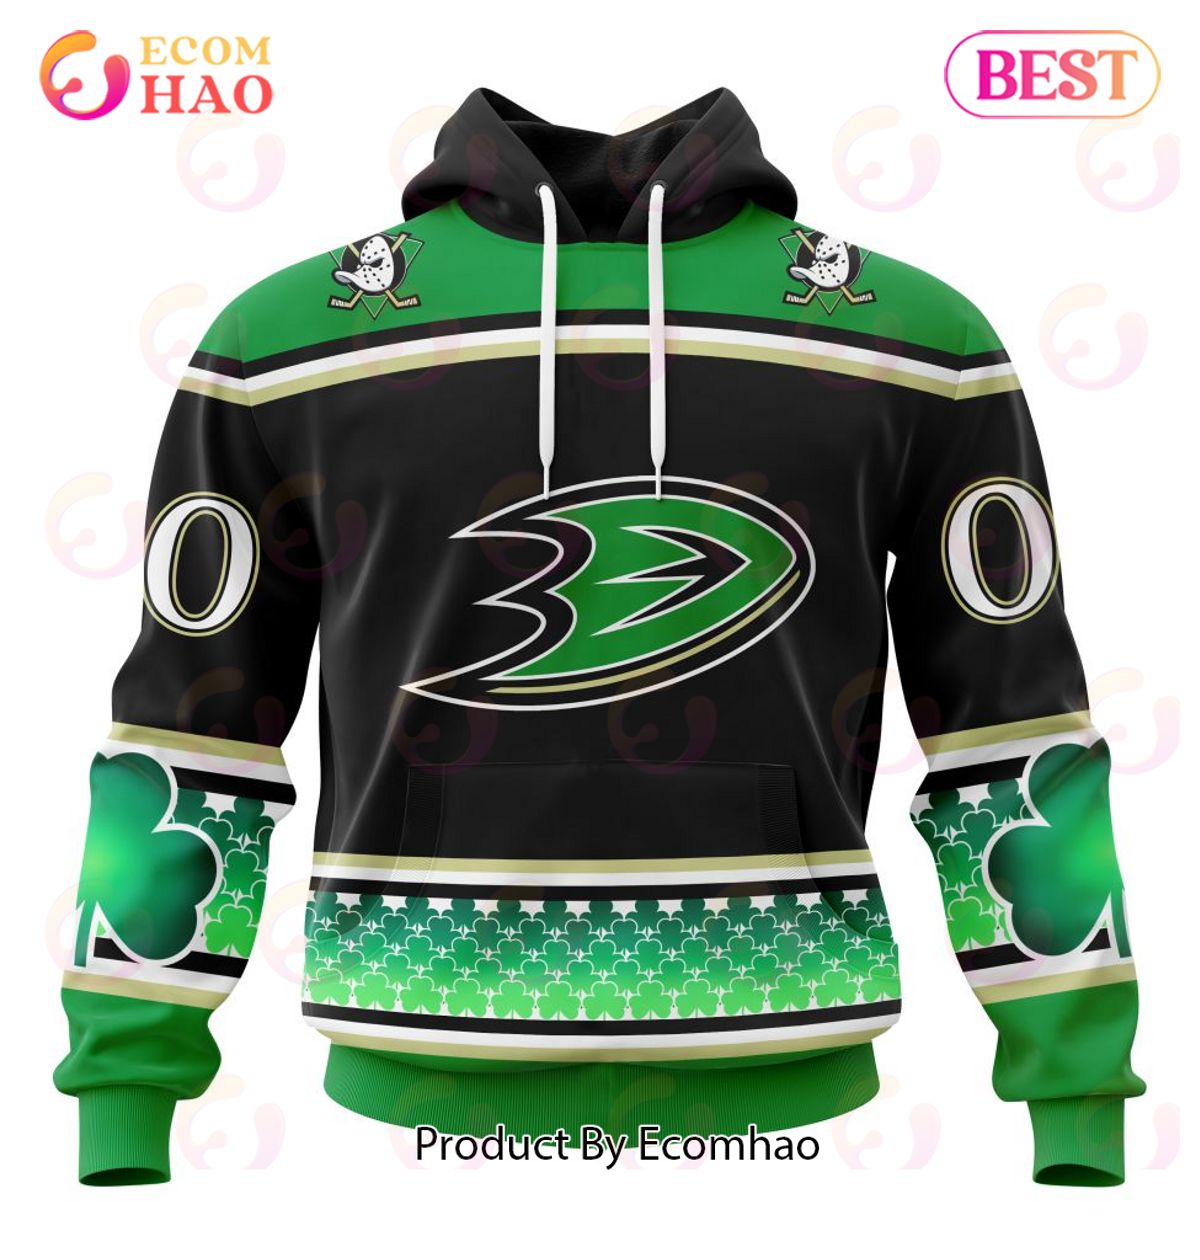 NHL Anaheim Ducks Specialized Unisex Kits Hockey Celebrate St Patrick’s Day 3D Hoodie